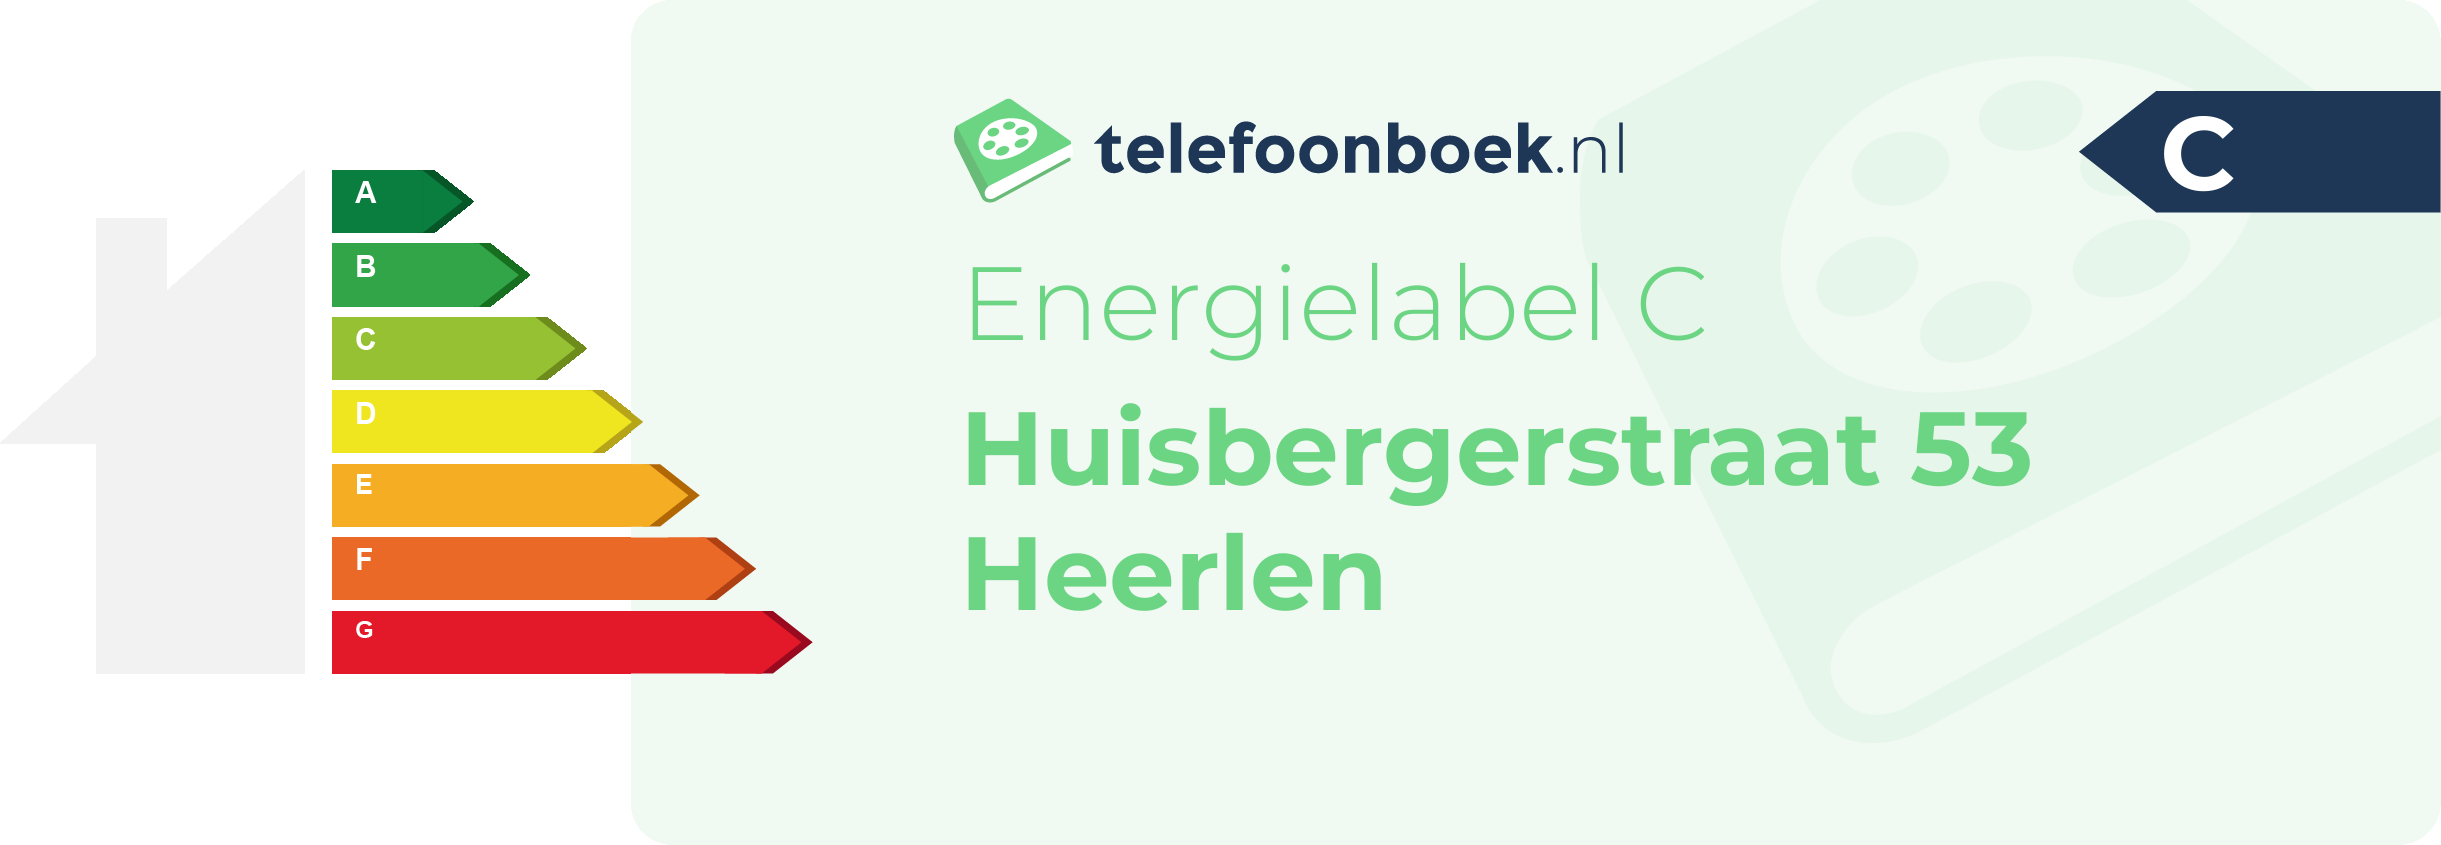 Energielabel Huisbergerstraat 53 Heerlen